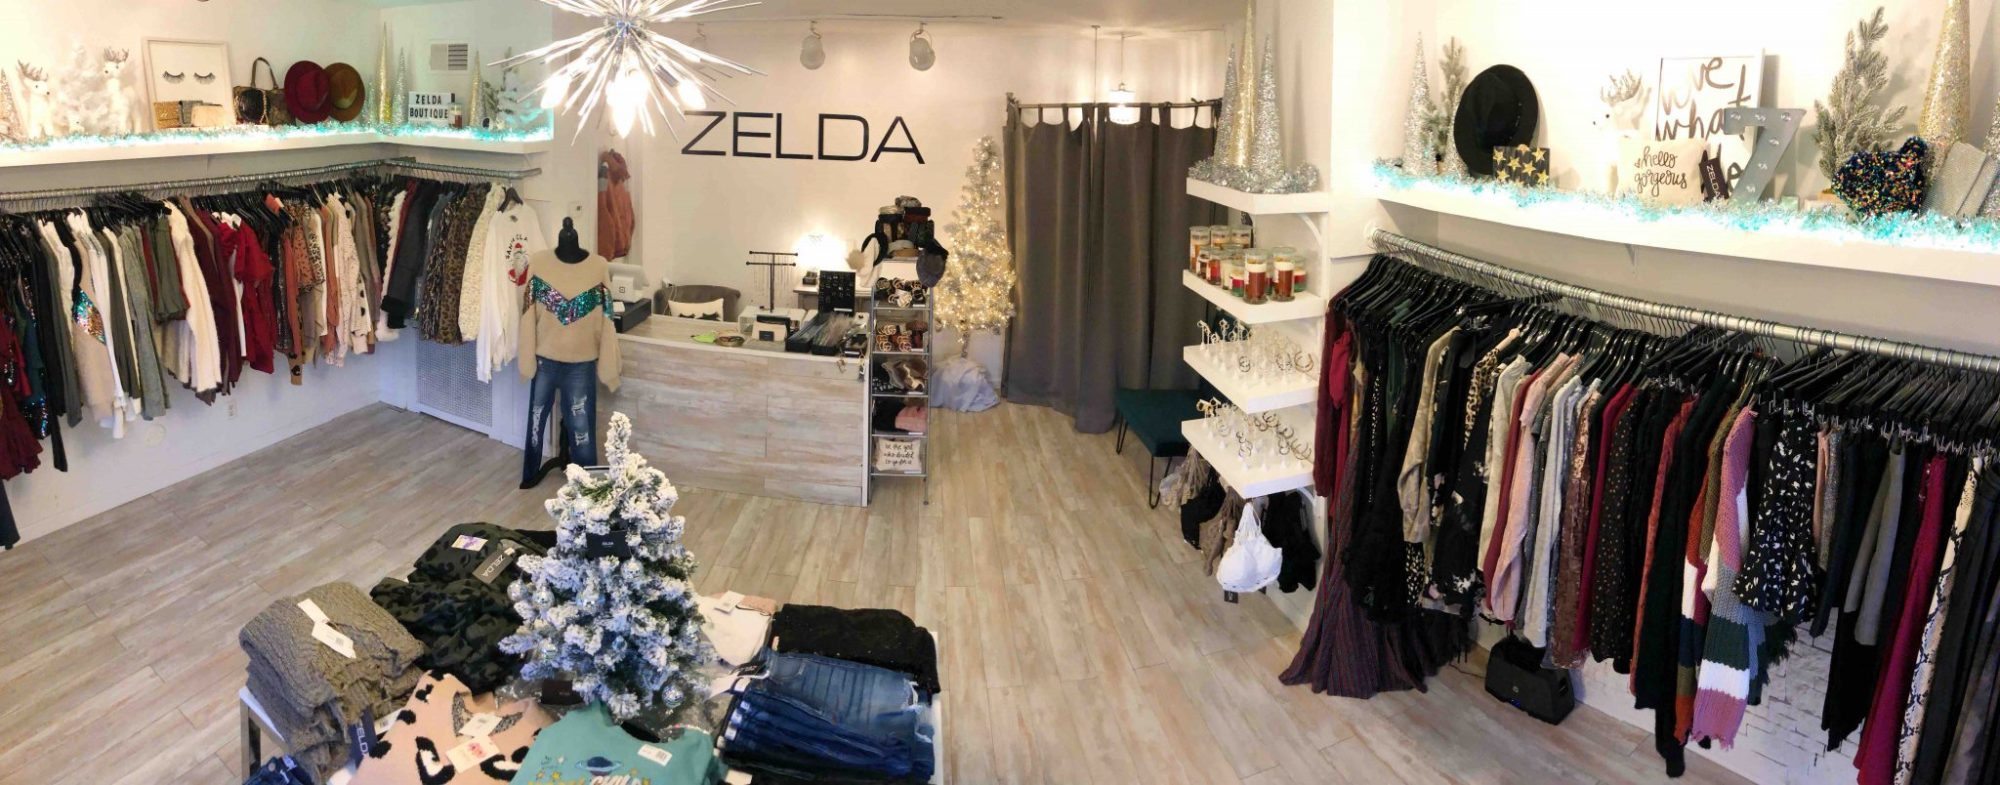 Inside of Zelda's Boutique